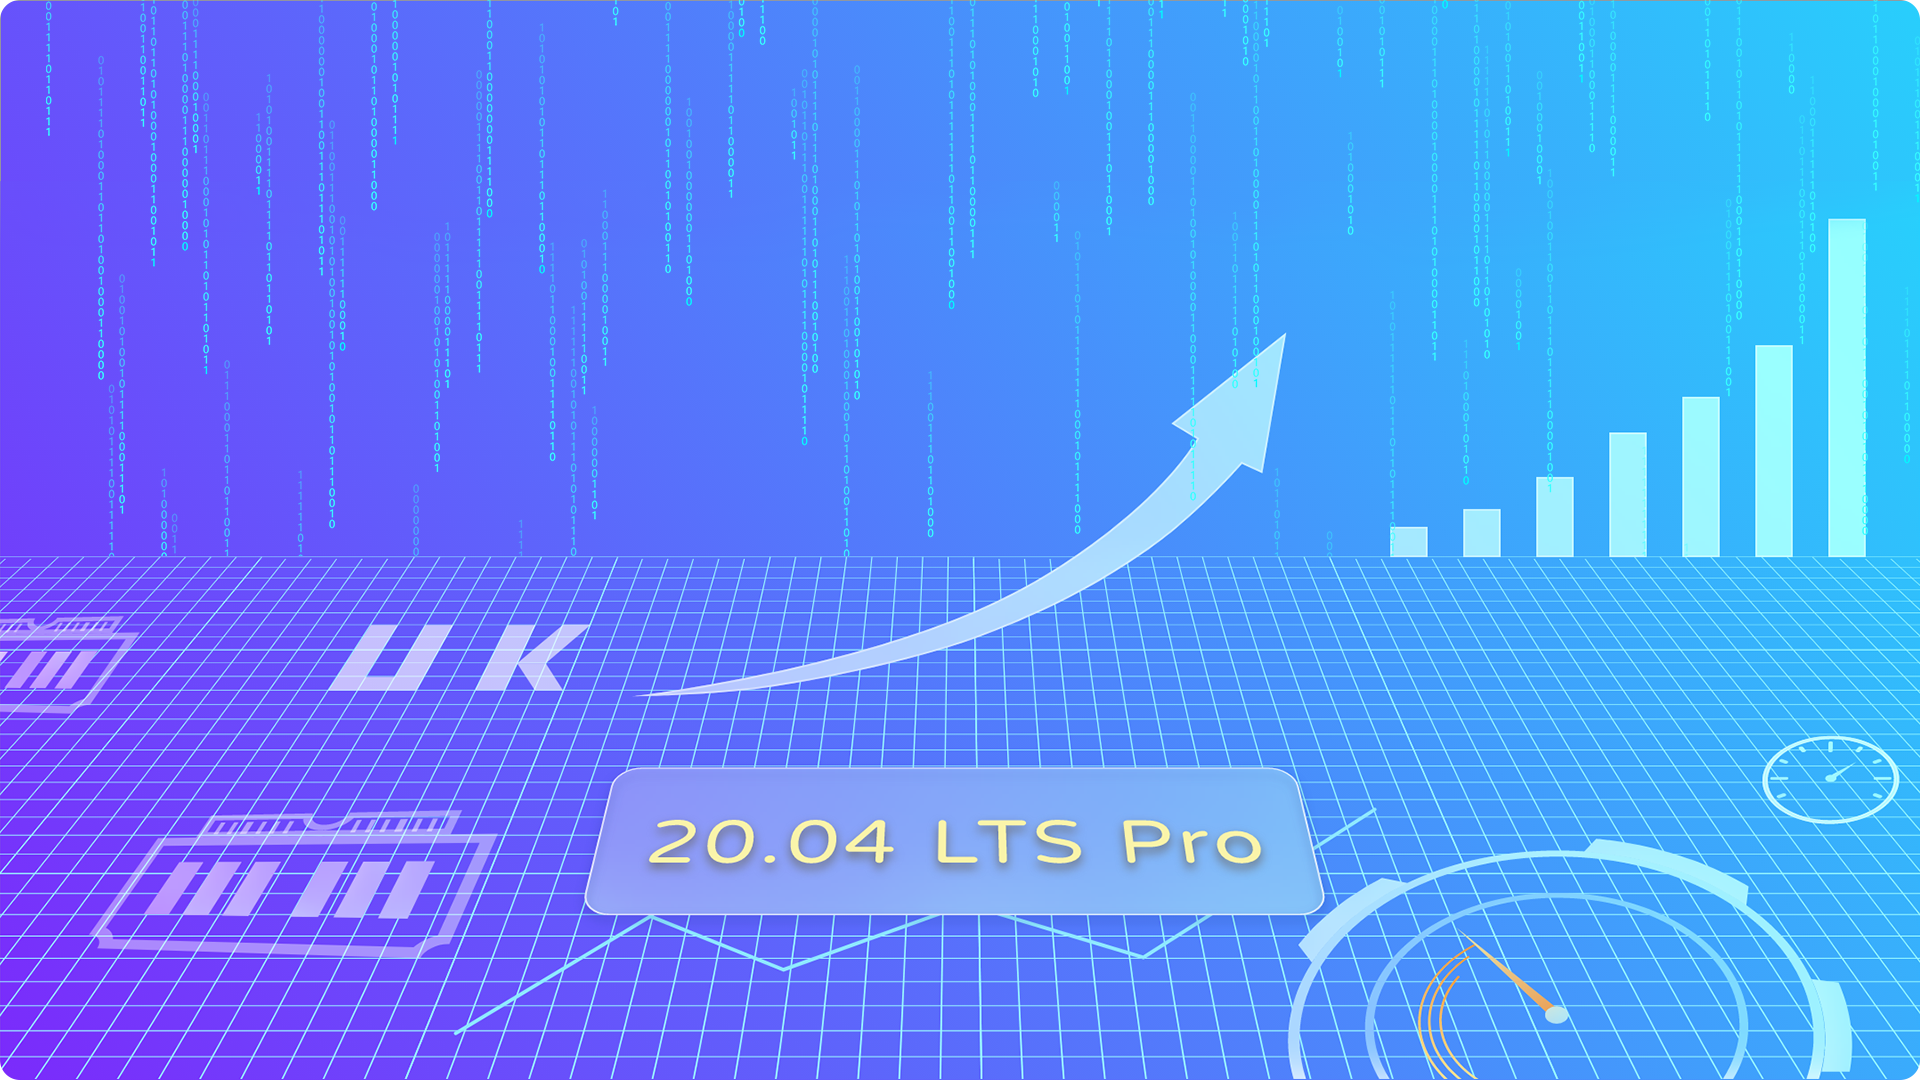 优麒麟 20.04 LTS Pro 发布 | 以初心，铸匠心